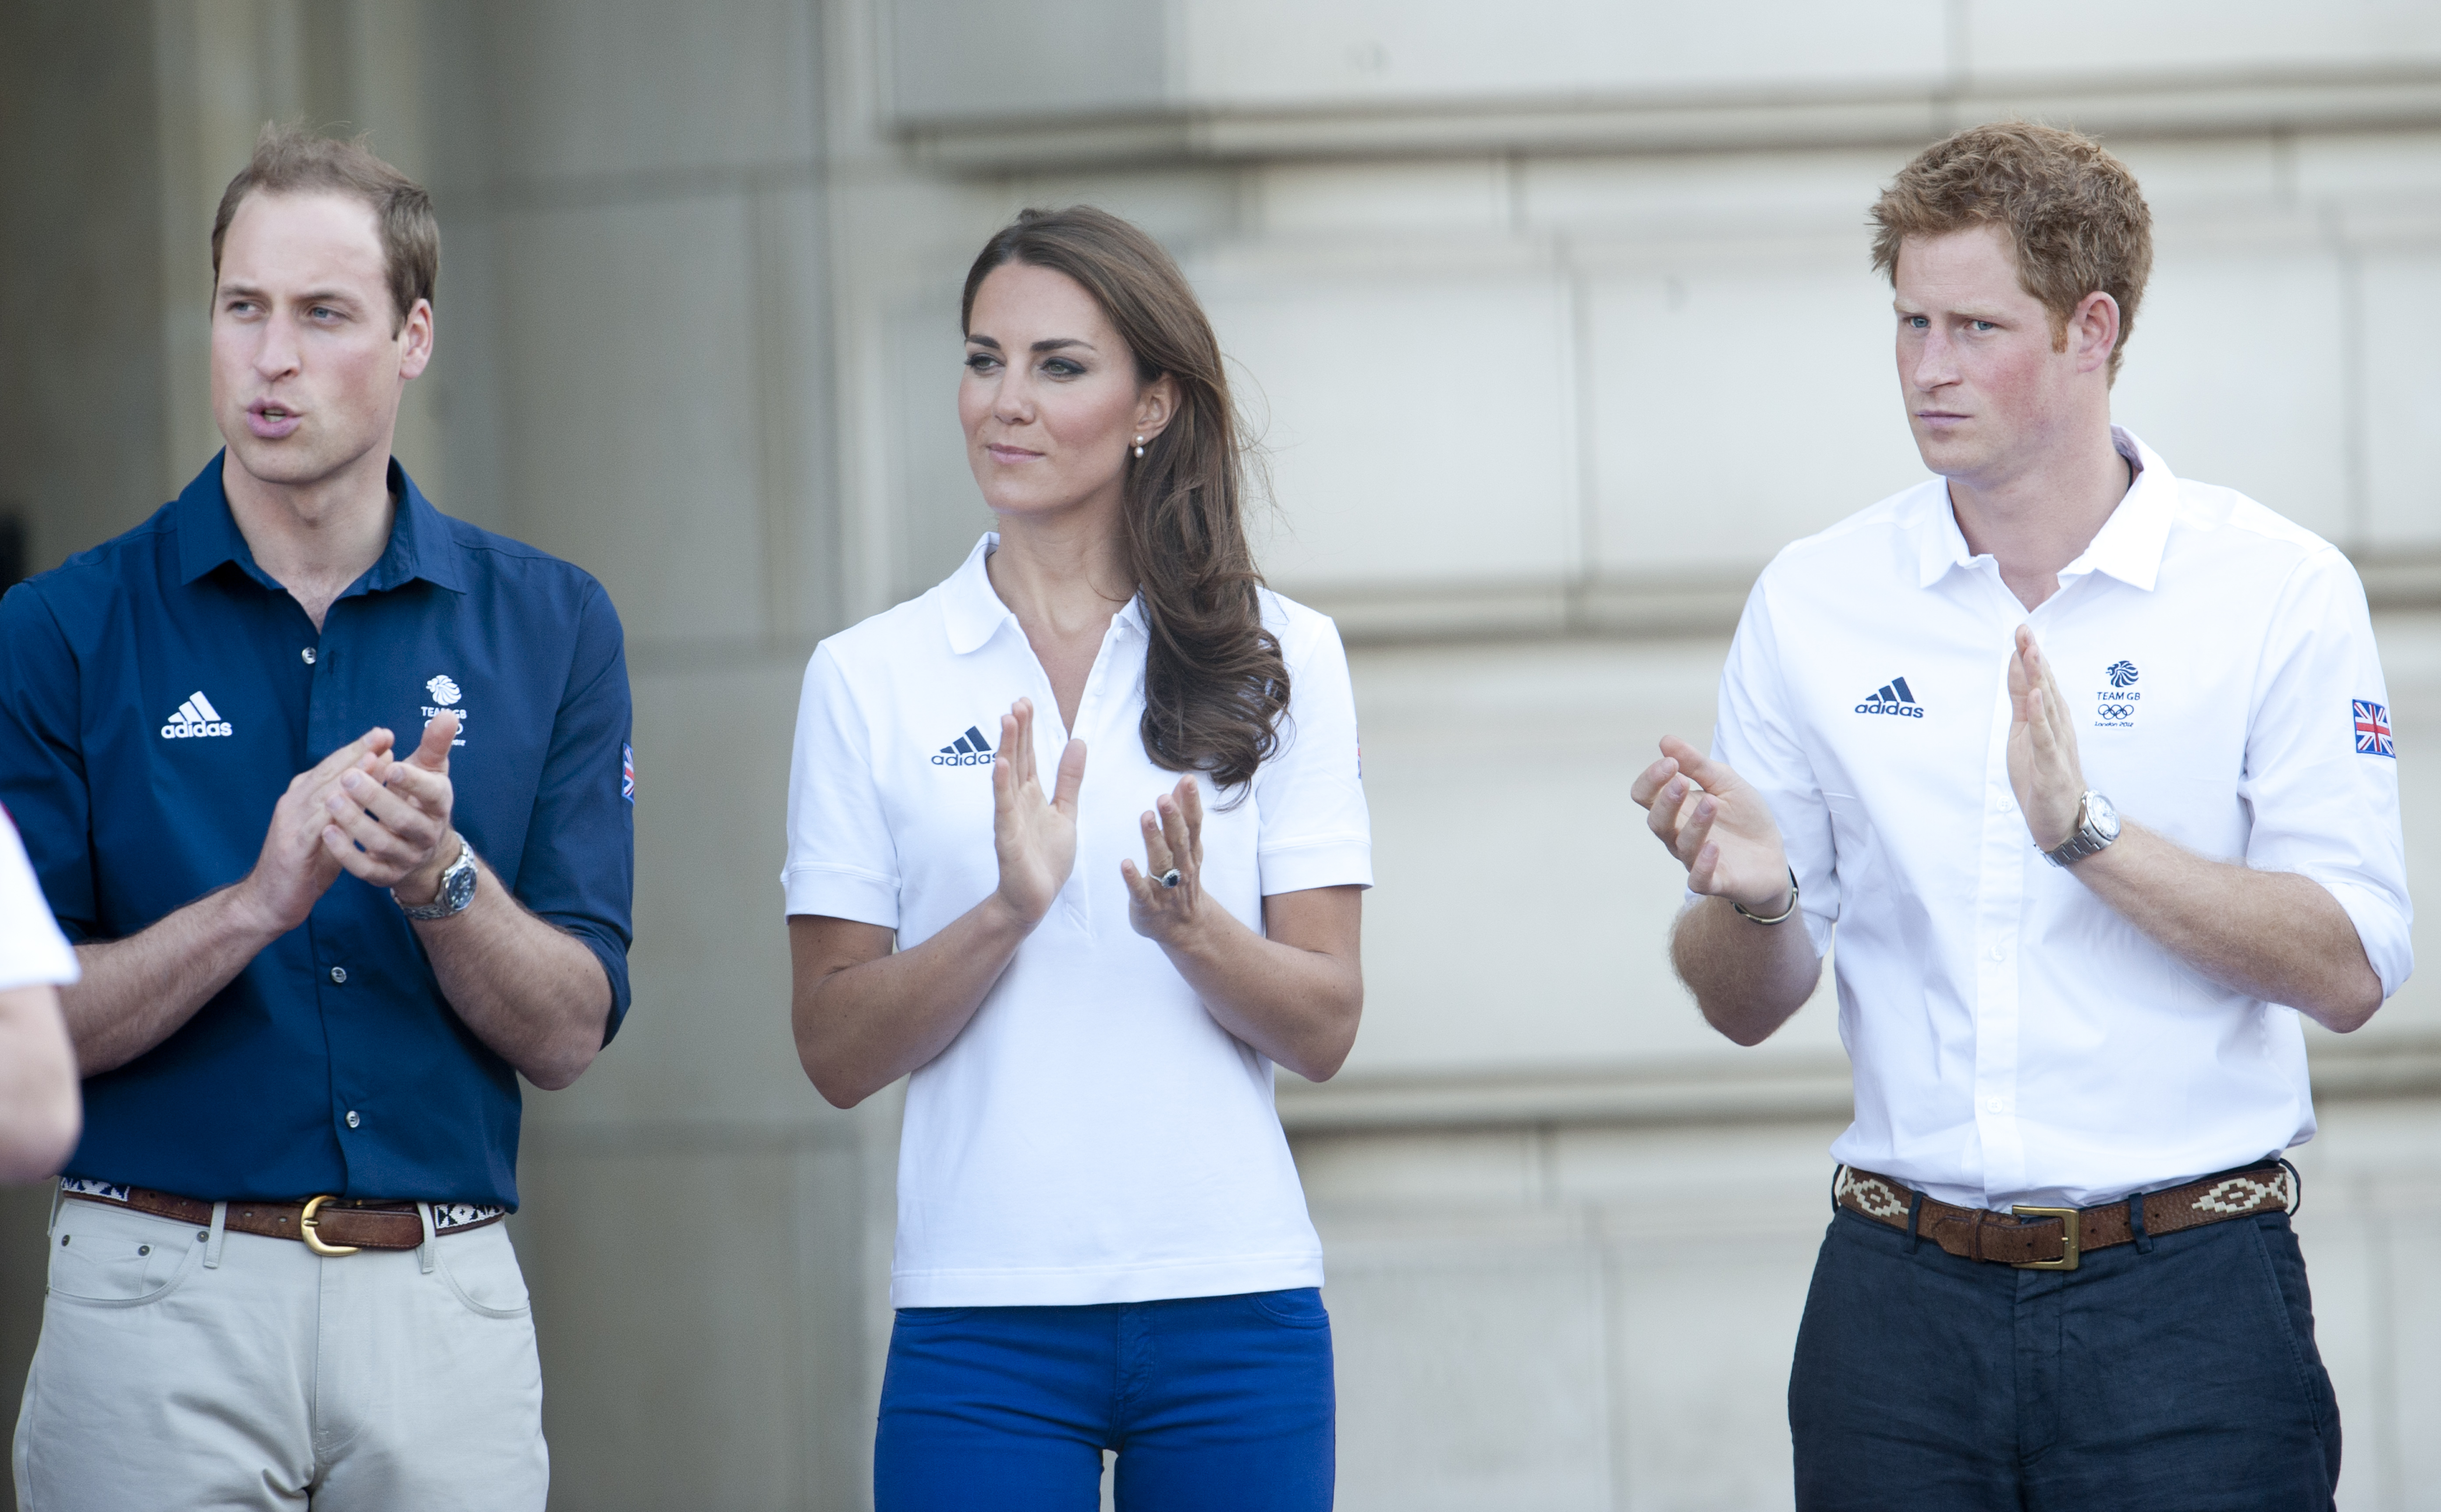 El Príncipe William, la Princesa Catherine y el Príncipe Harry en el Relevo de la Antorcha Olímpica de Londres 2012 | Foto: Getty Images